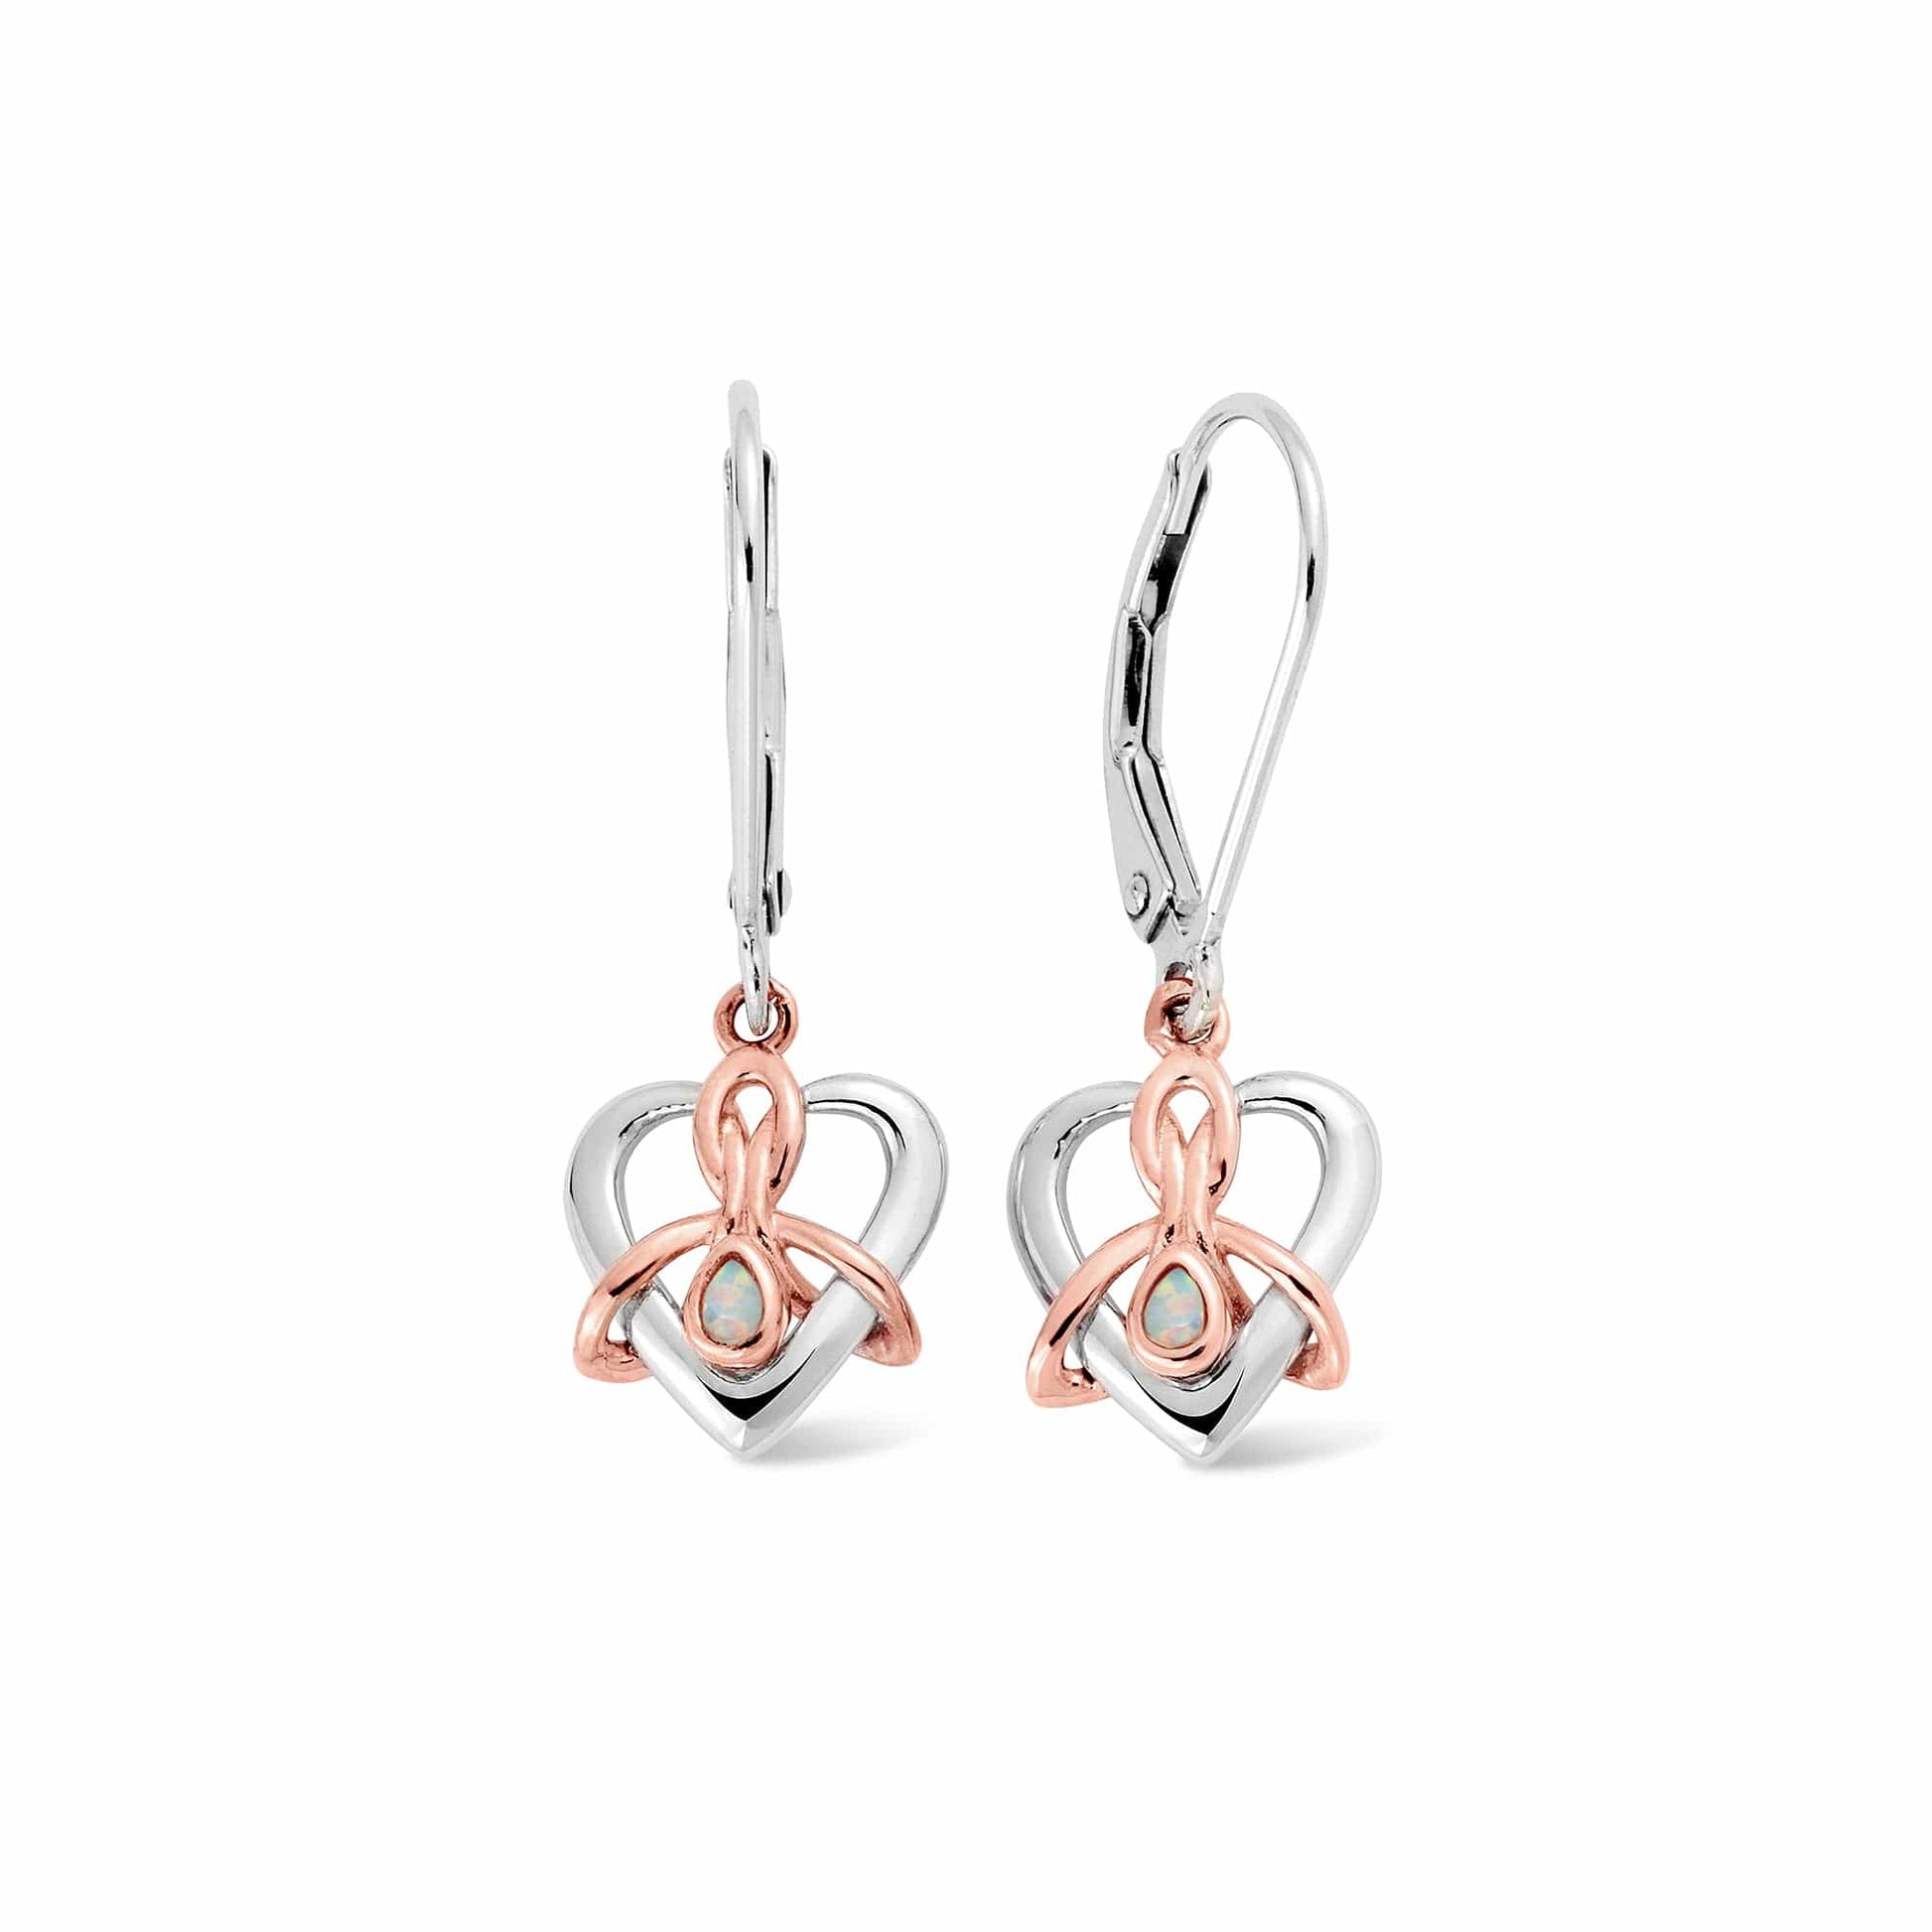 Dwynwen Silver and Opal Drop Earrings